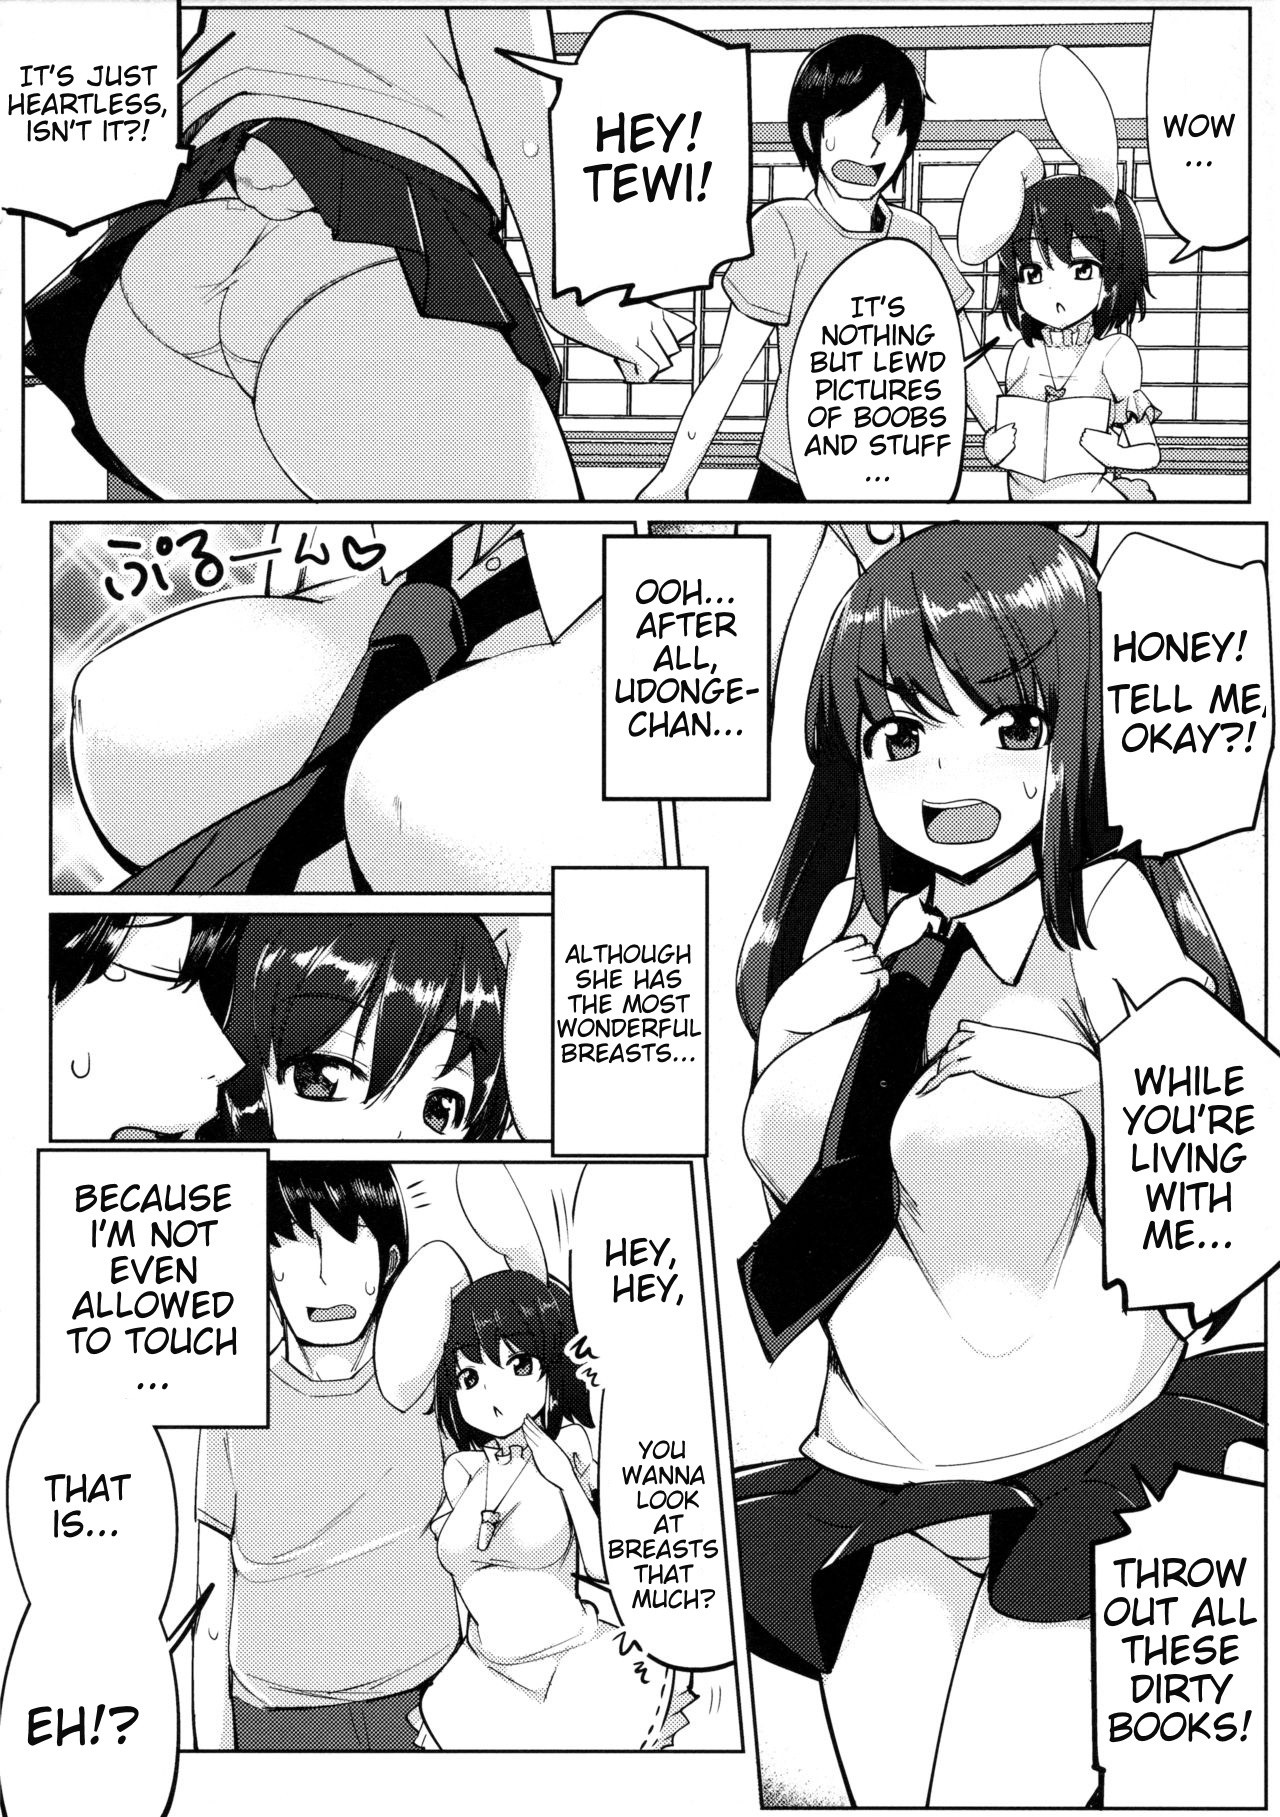 Uwaki Shite Tewi-chan to Sex Shita 0 hentai manga picture 3